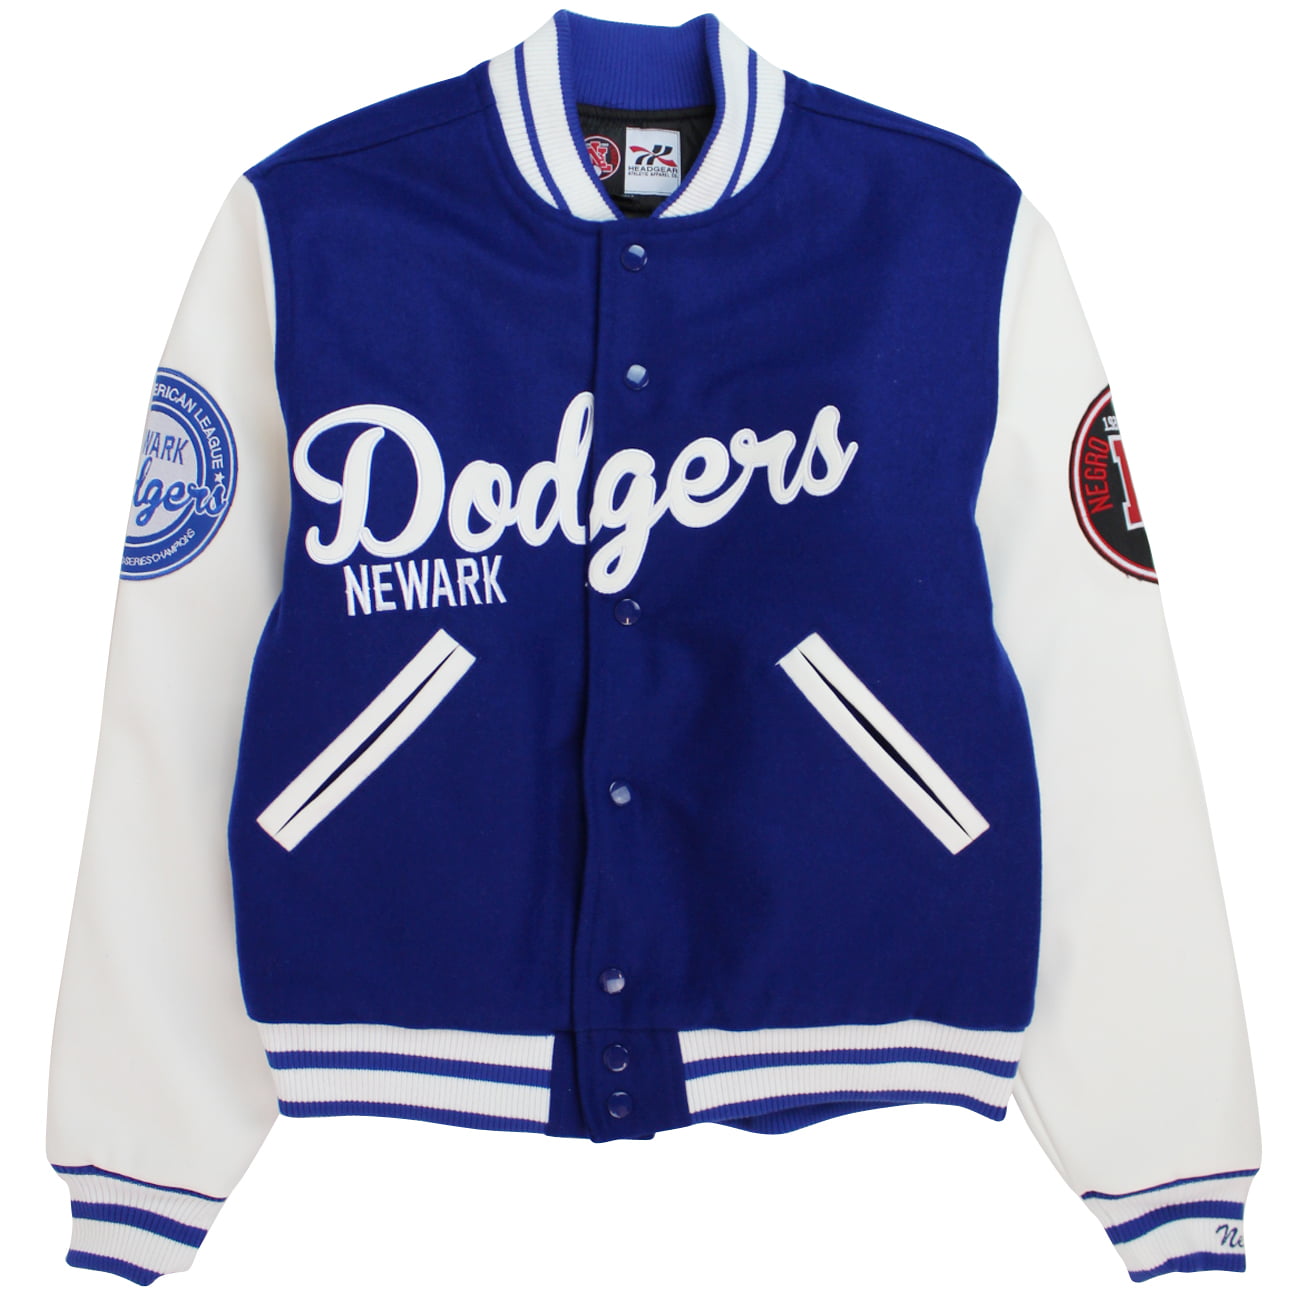 Headgear Dodgers Newark Baseball Varsity Jacket 